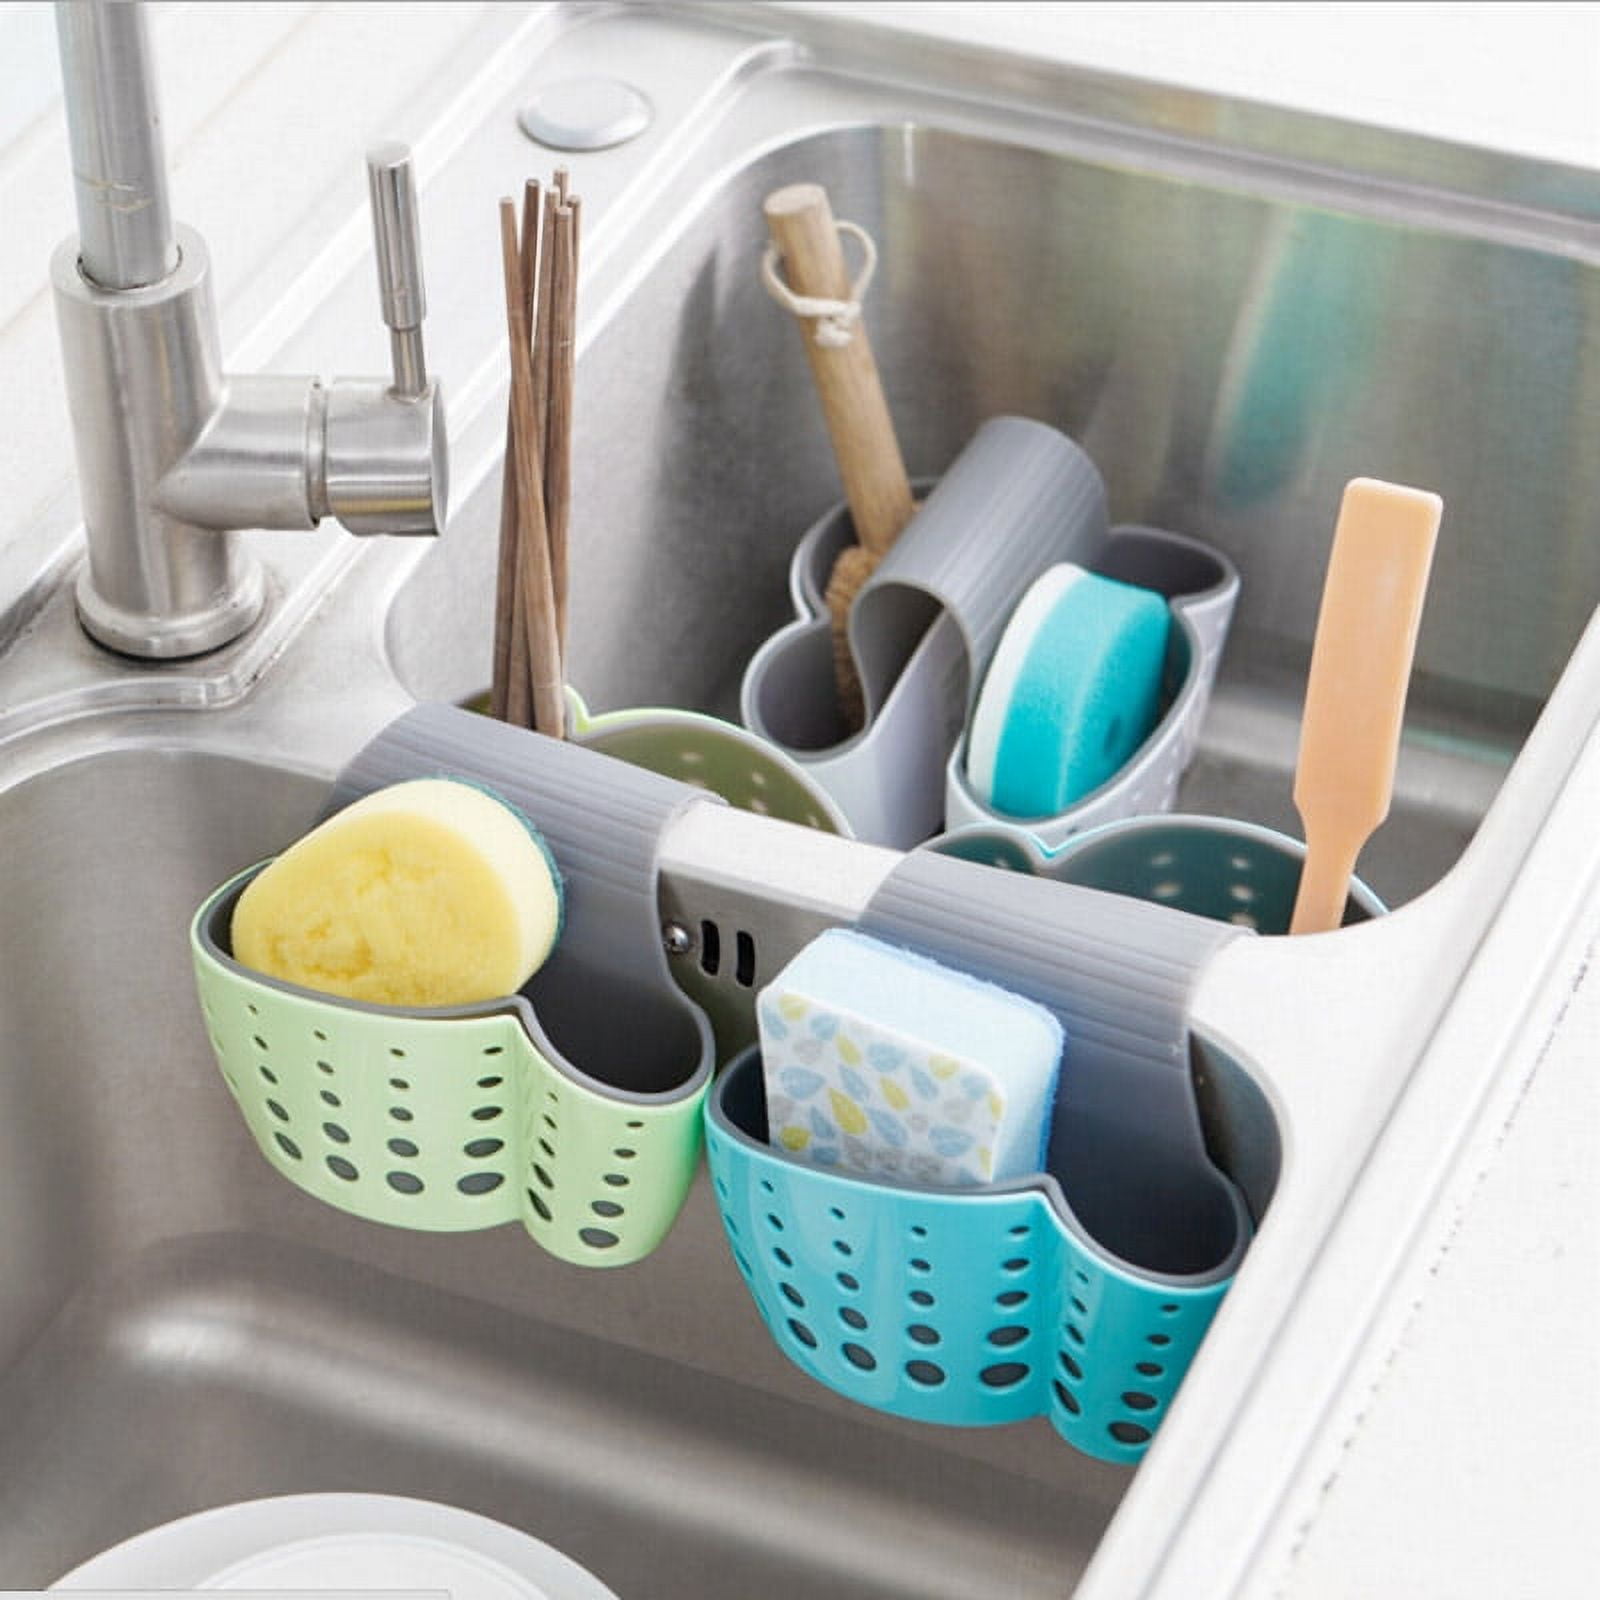 AllTopBargains 4 Sink Caddy Kitchen Silicone Soap Sponge Holder Hanging Basket Dish Bath Shower